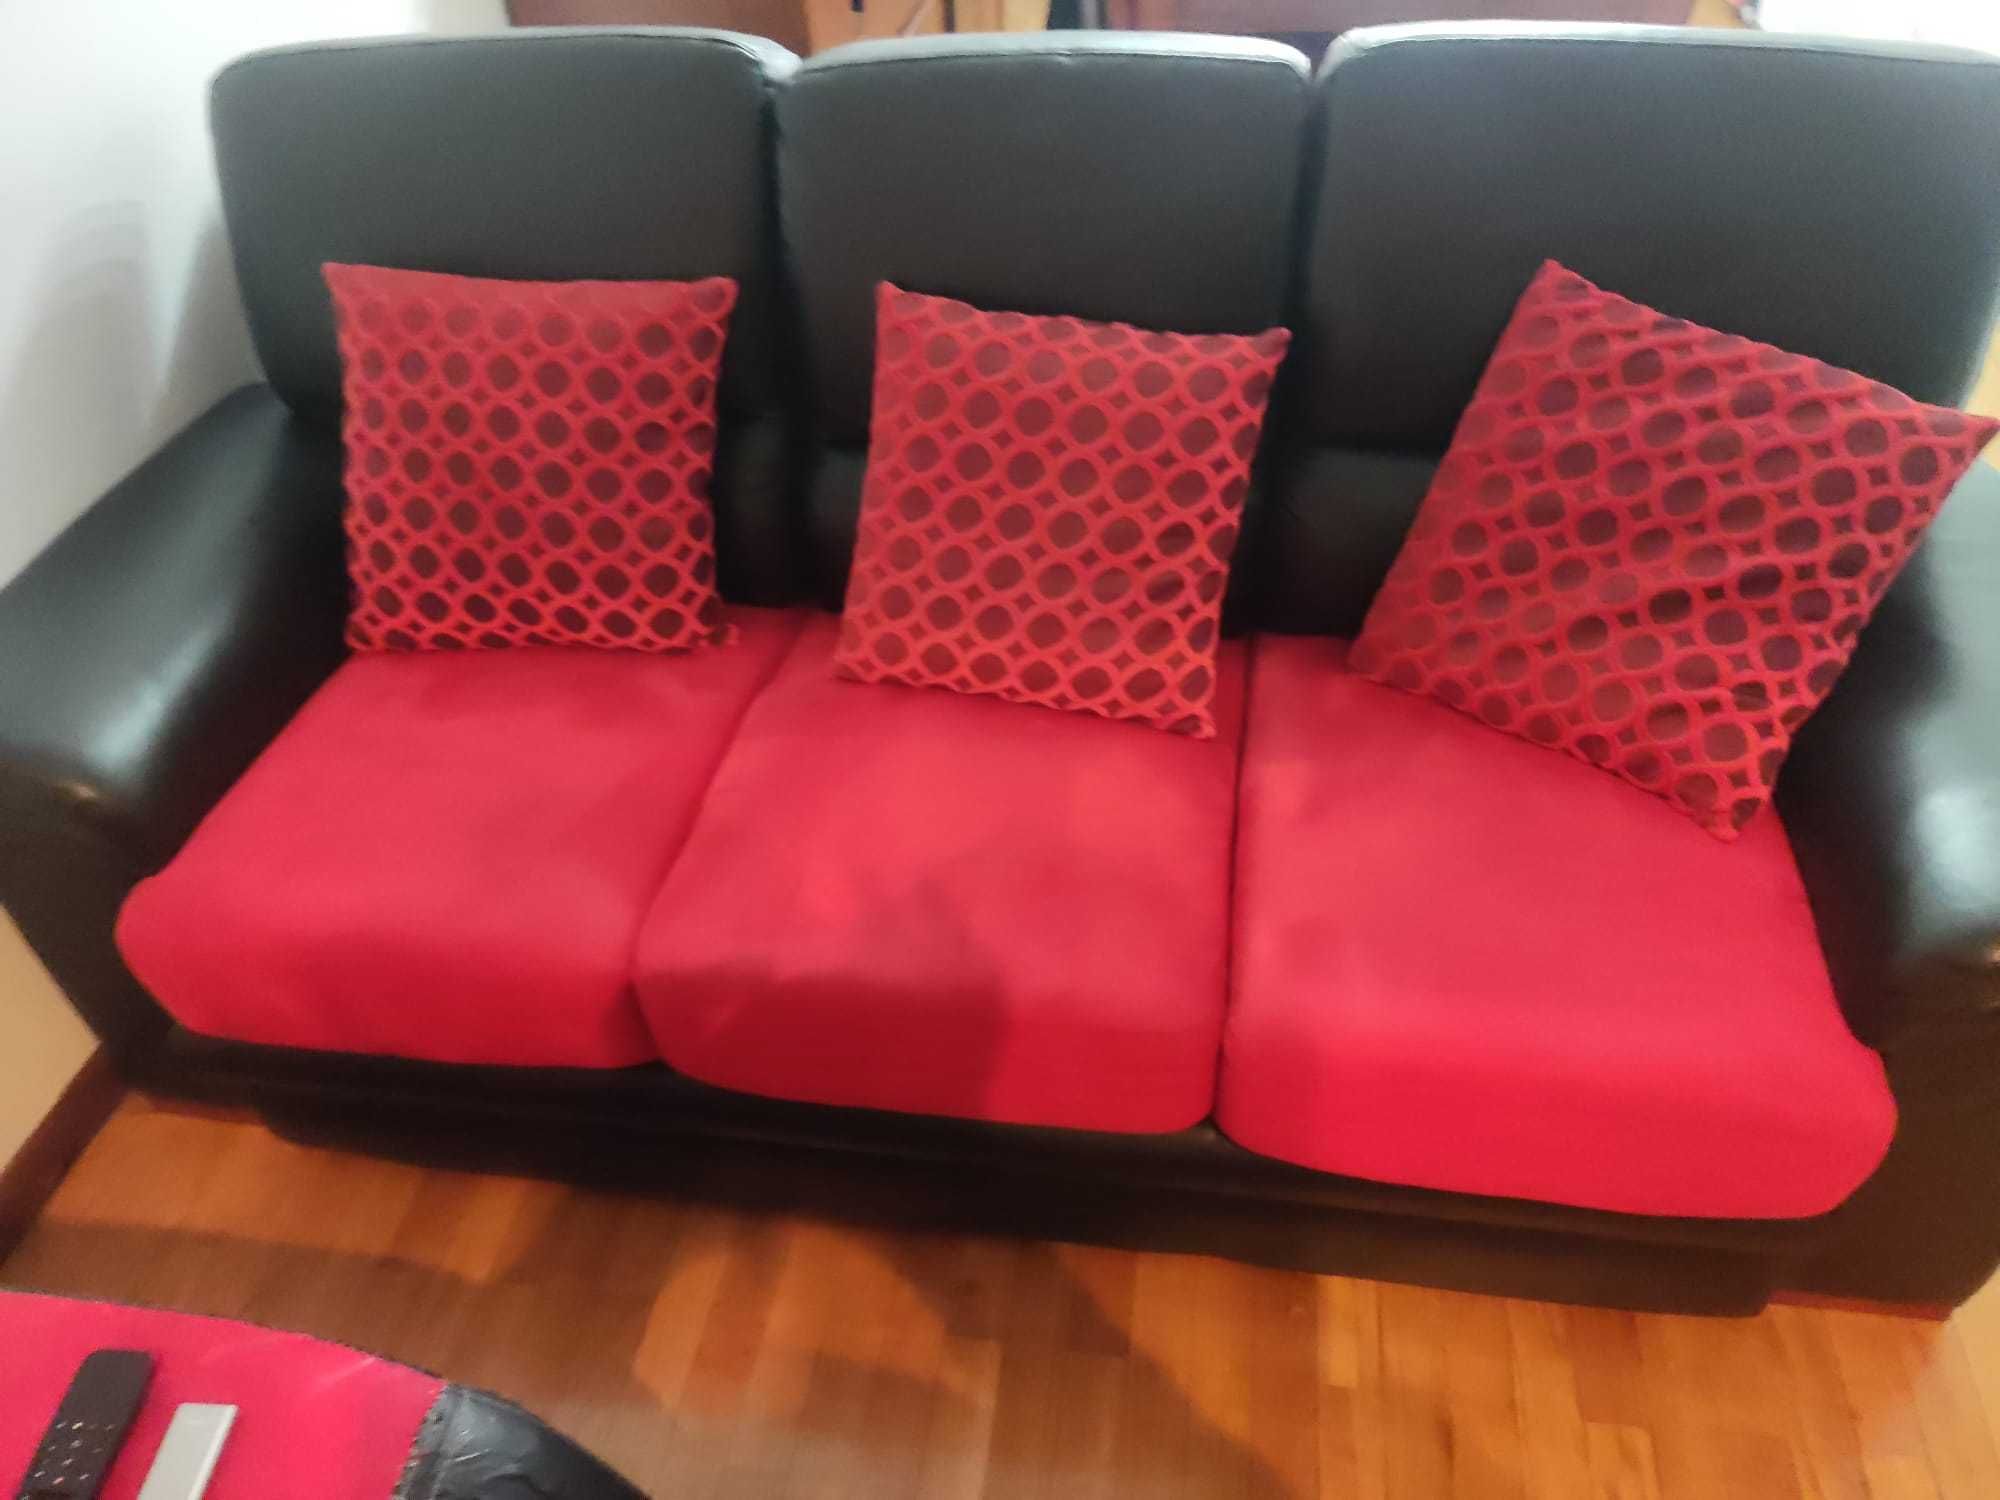 Vendo sofas 2 por 200 euros